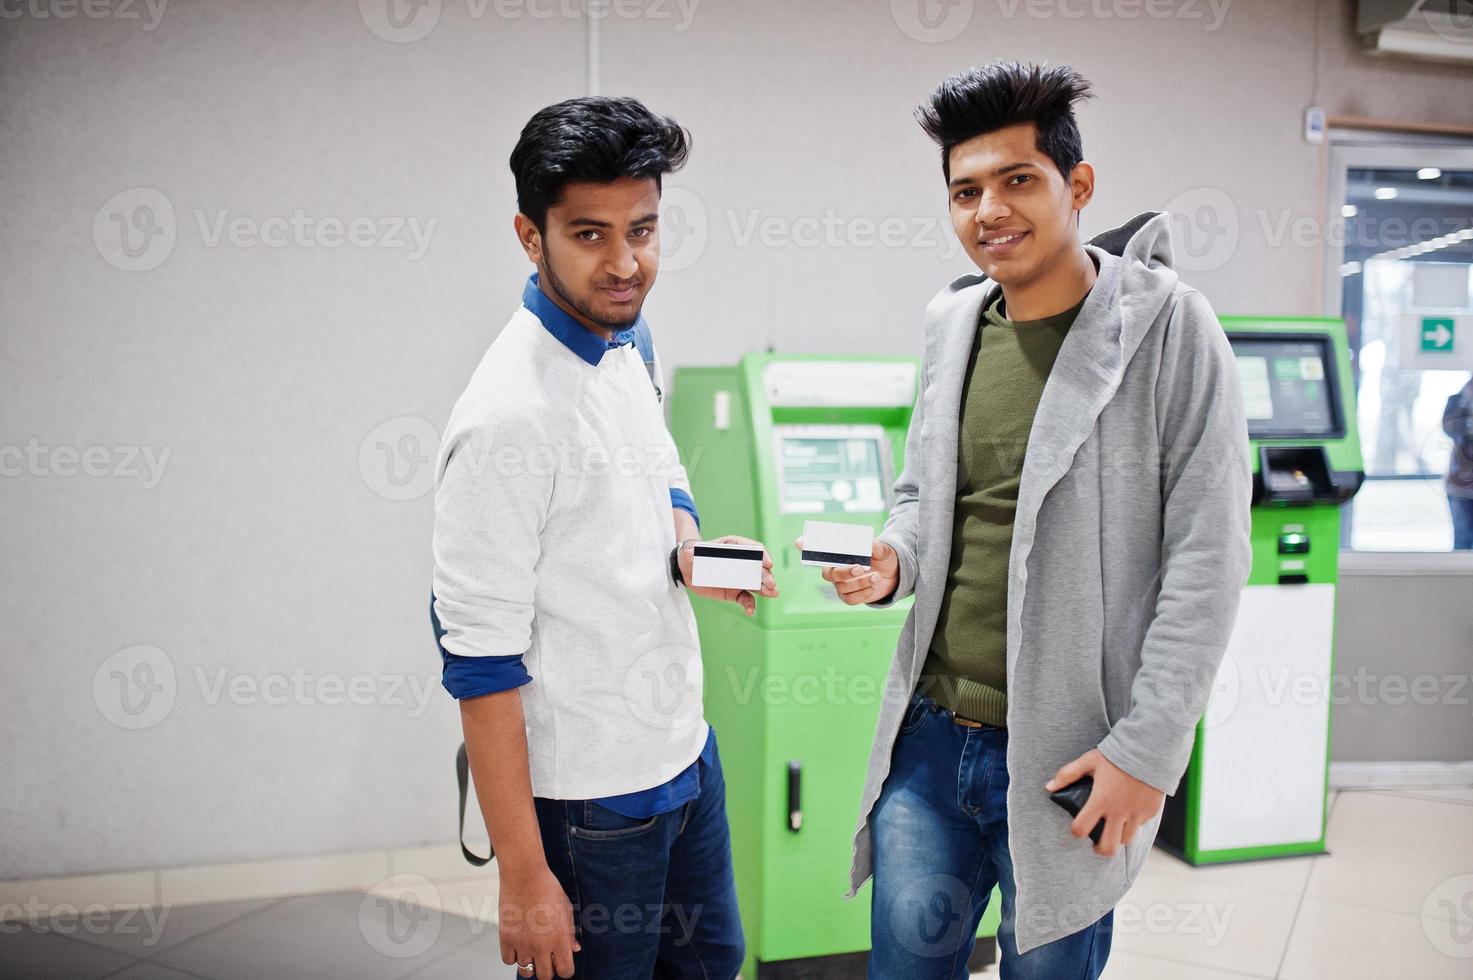 deux mecs asiatiques tenant des cartes de crédit en main contre un guichet automatique vert. photo